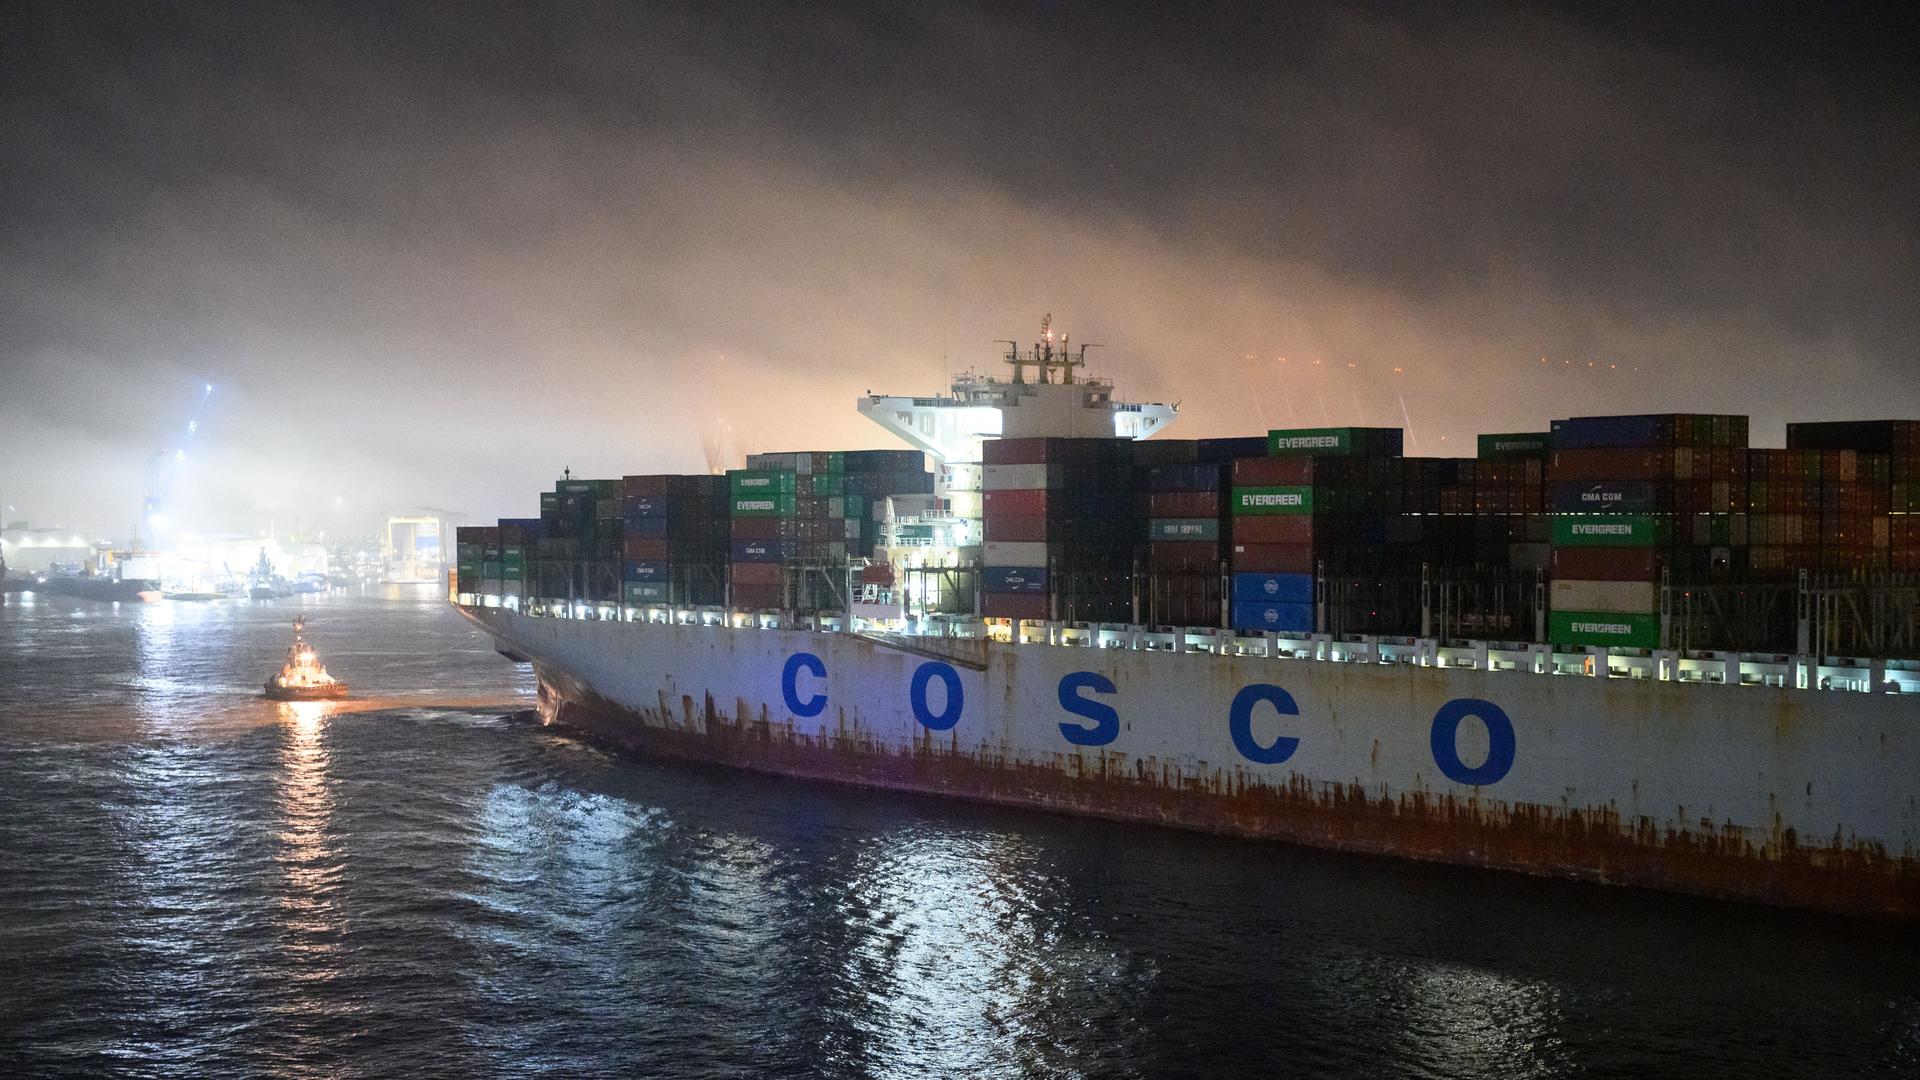 Das Containerschiff "Cosco Pride" fährt auf der Elbe vor dem Container-Terminal Tollerort im Morgennebel. 